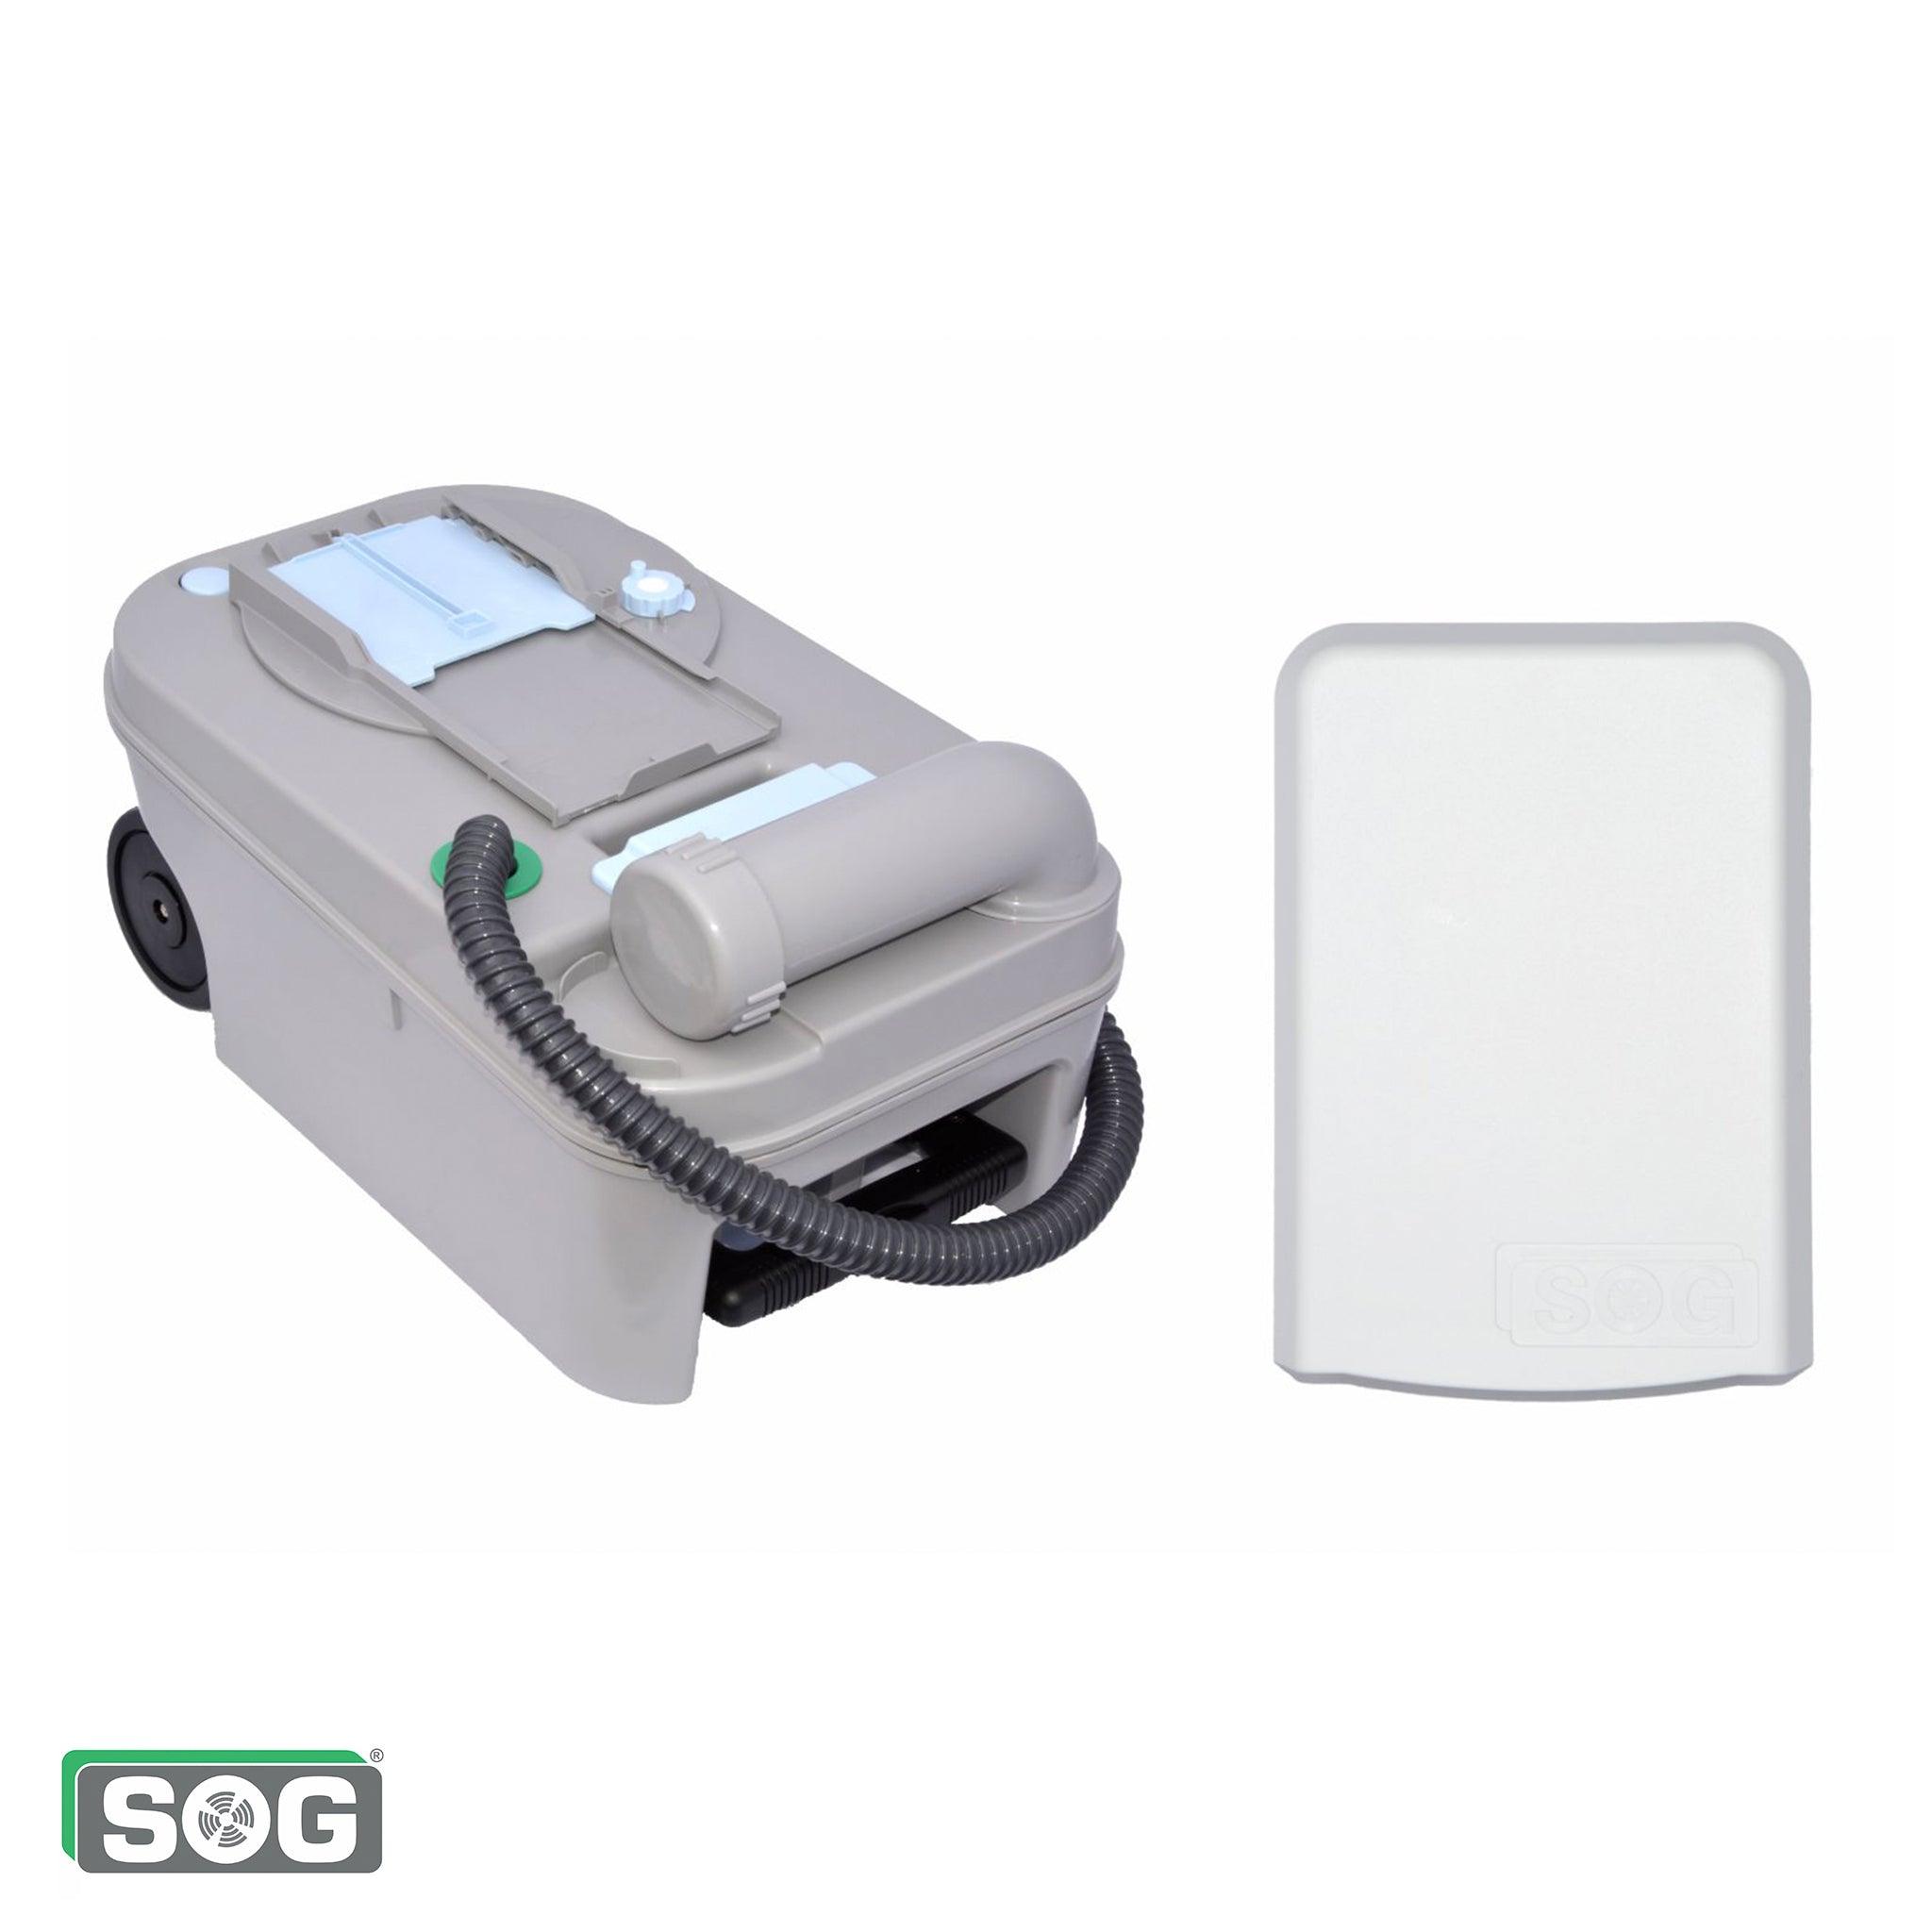 SOG Toilet Ventilation System - Aussie Traveller